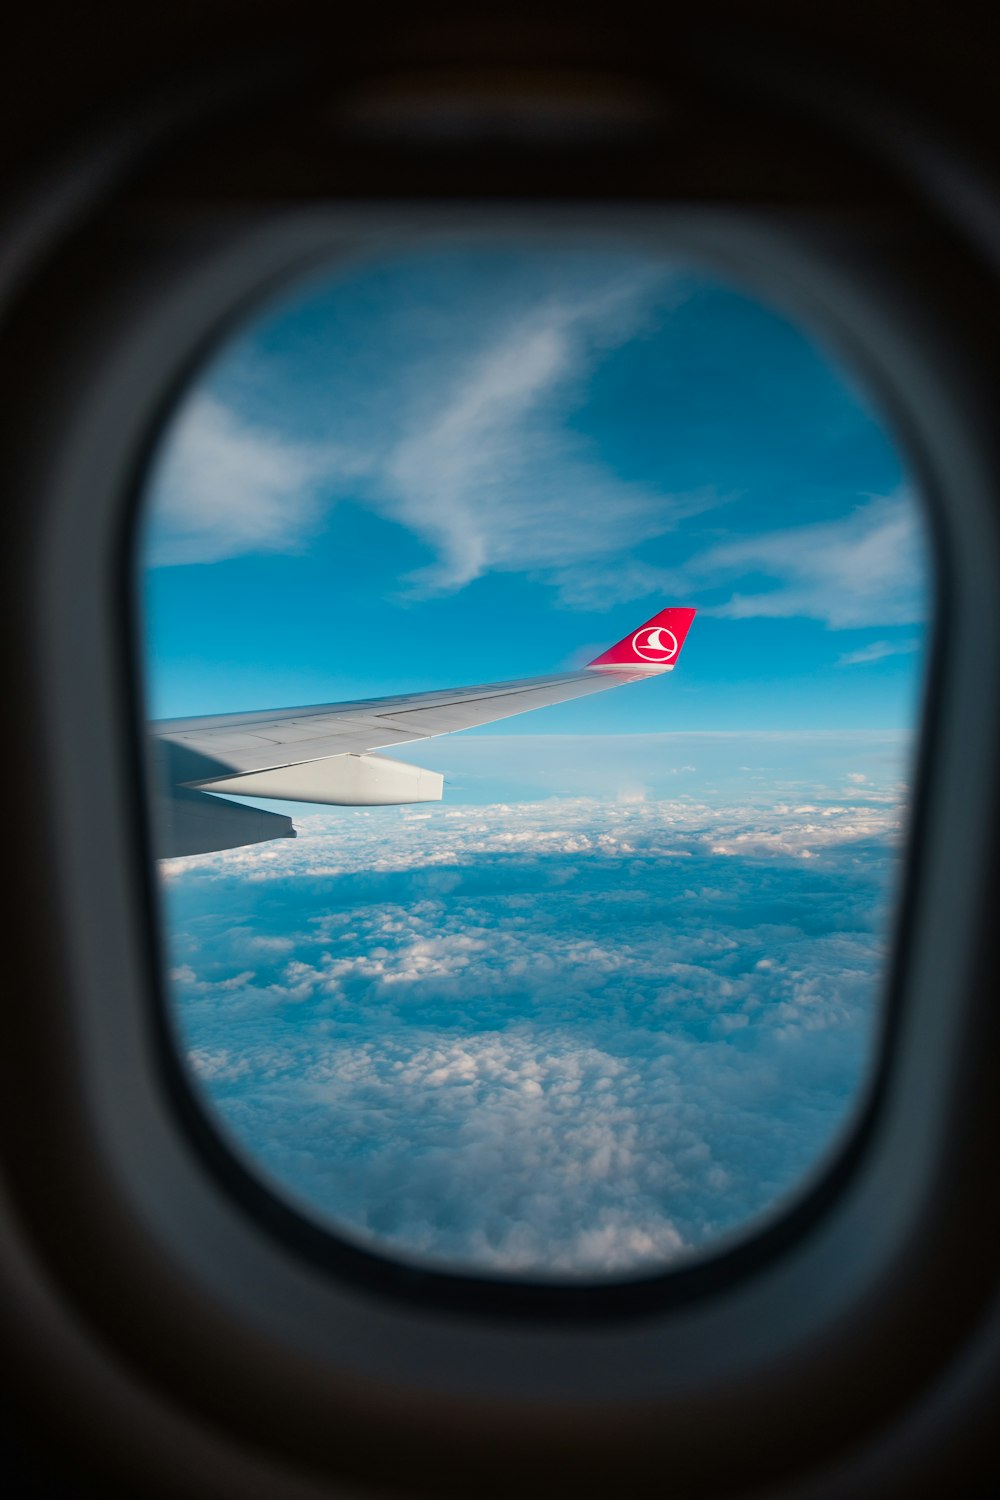 Blick auf den Flügel des Flugzeugs durch das Fenster